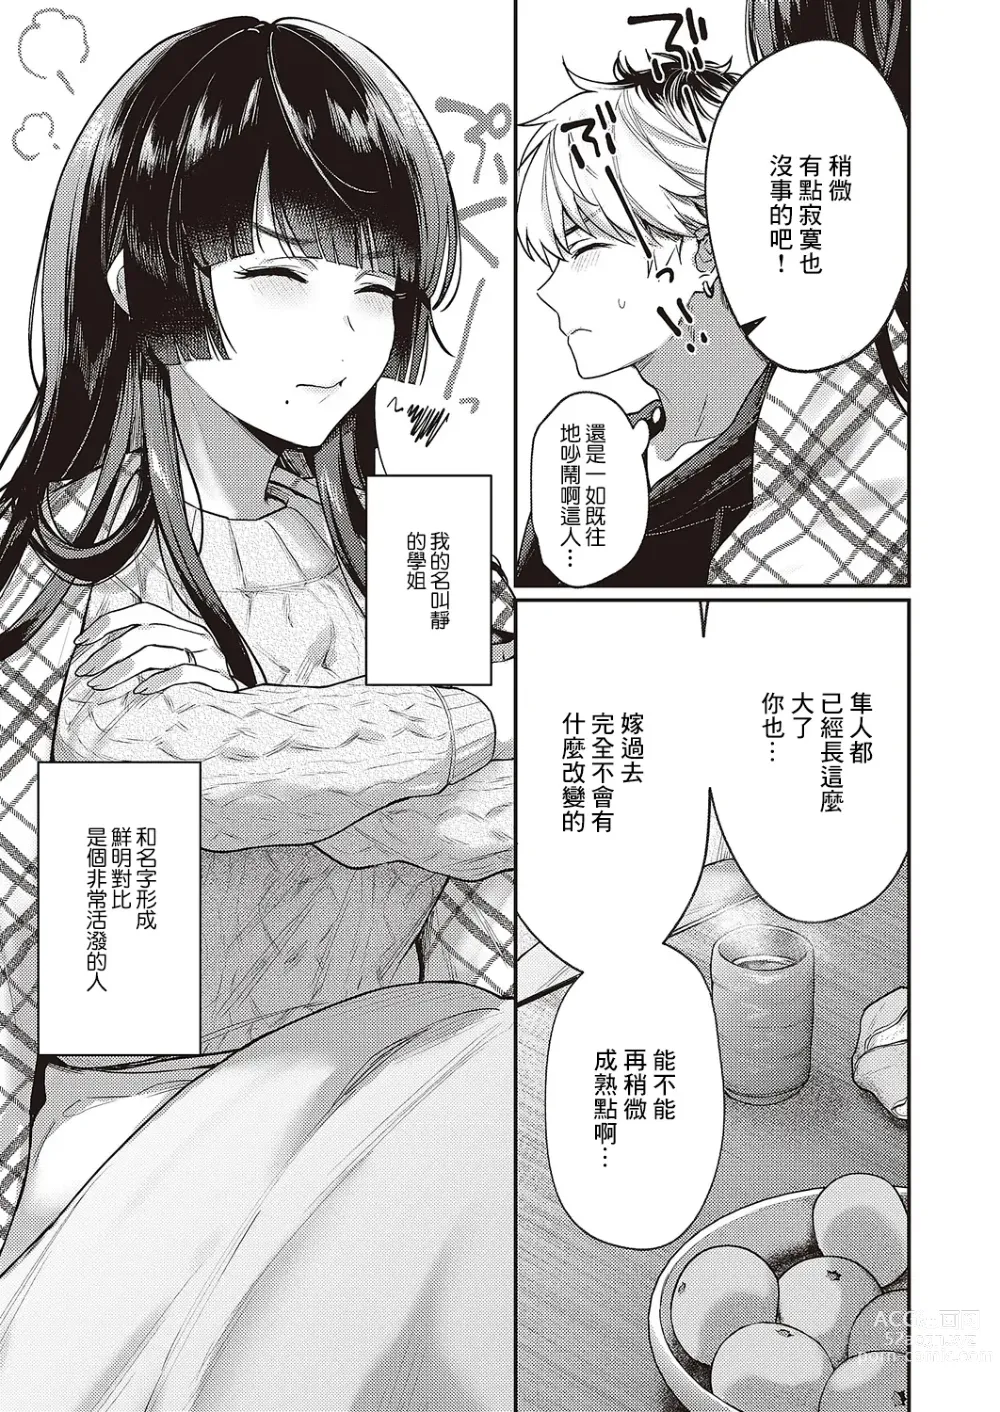 Page 5 of manga Doronko Asobi